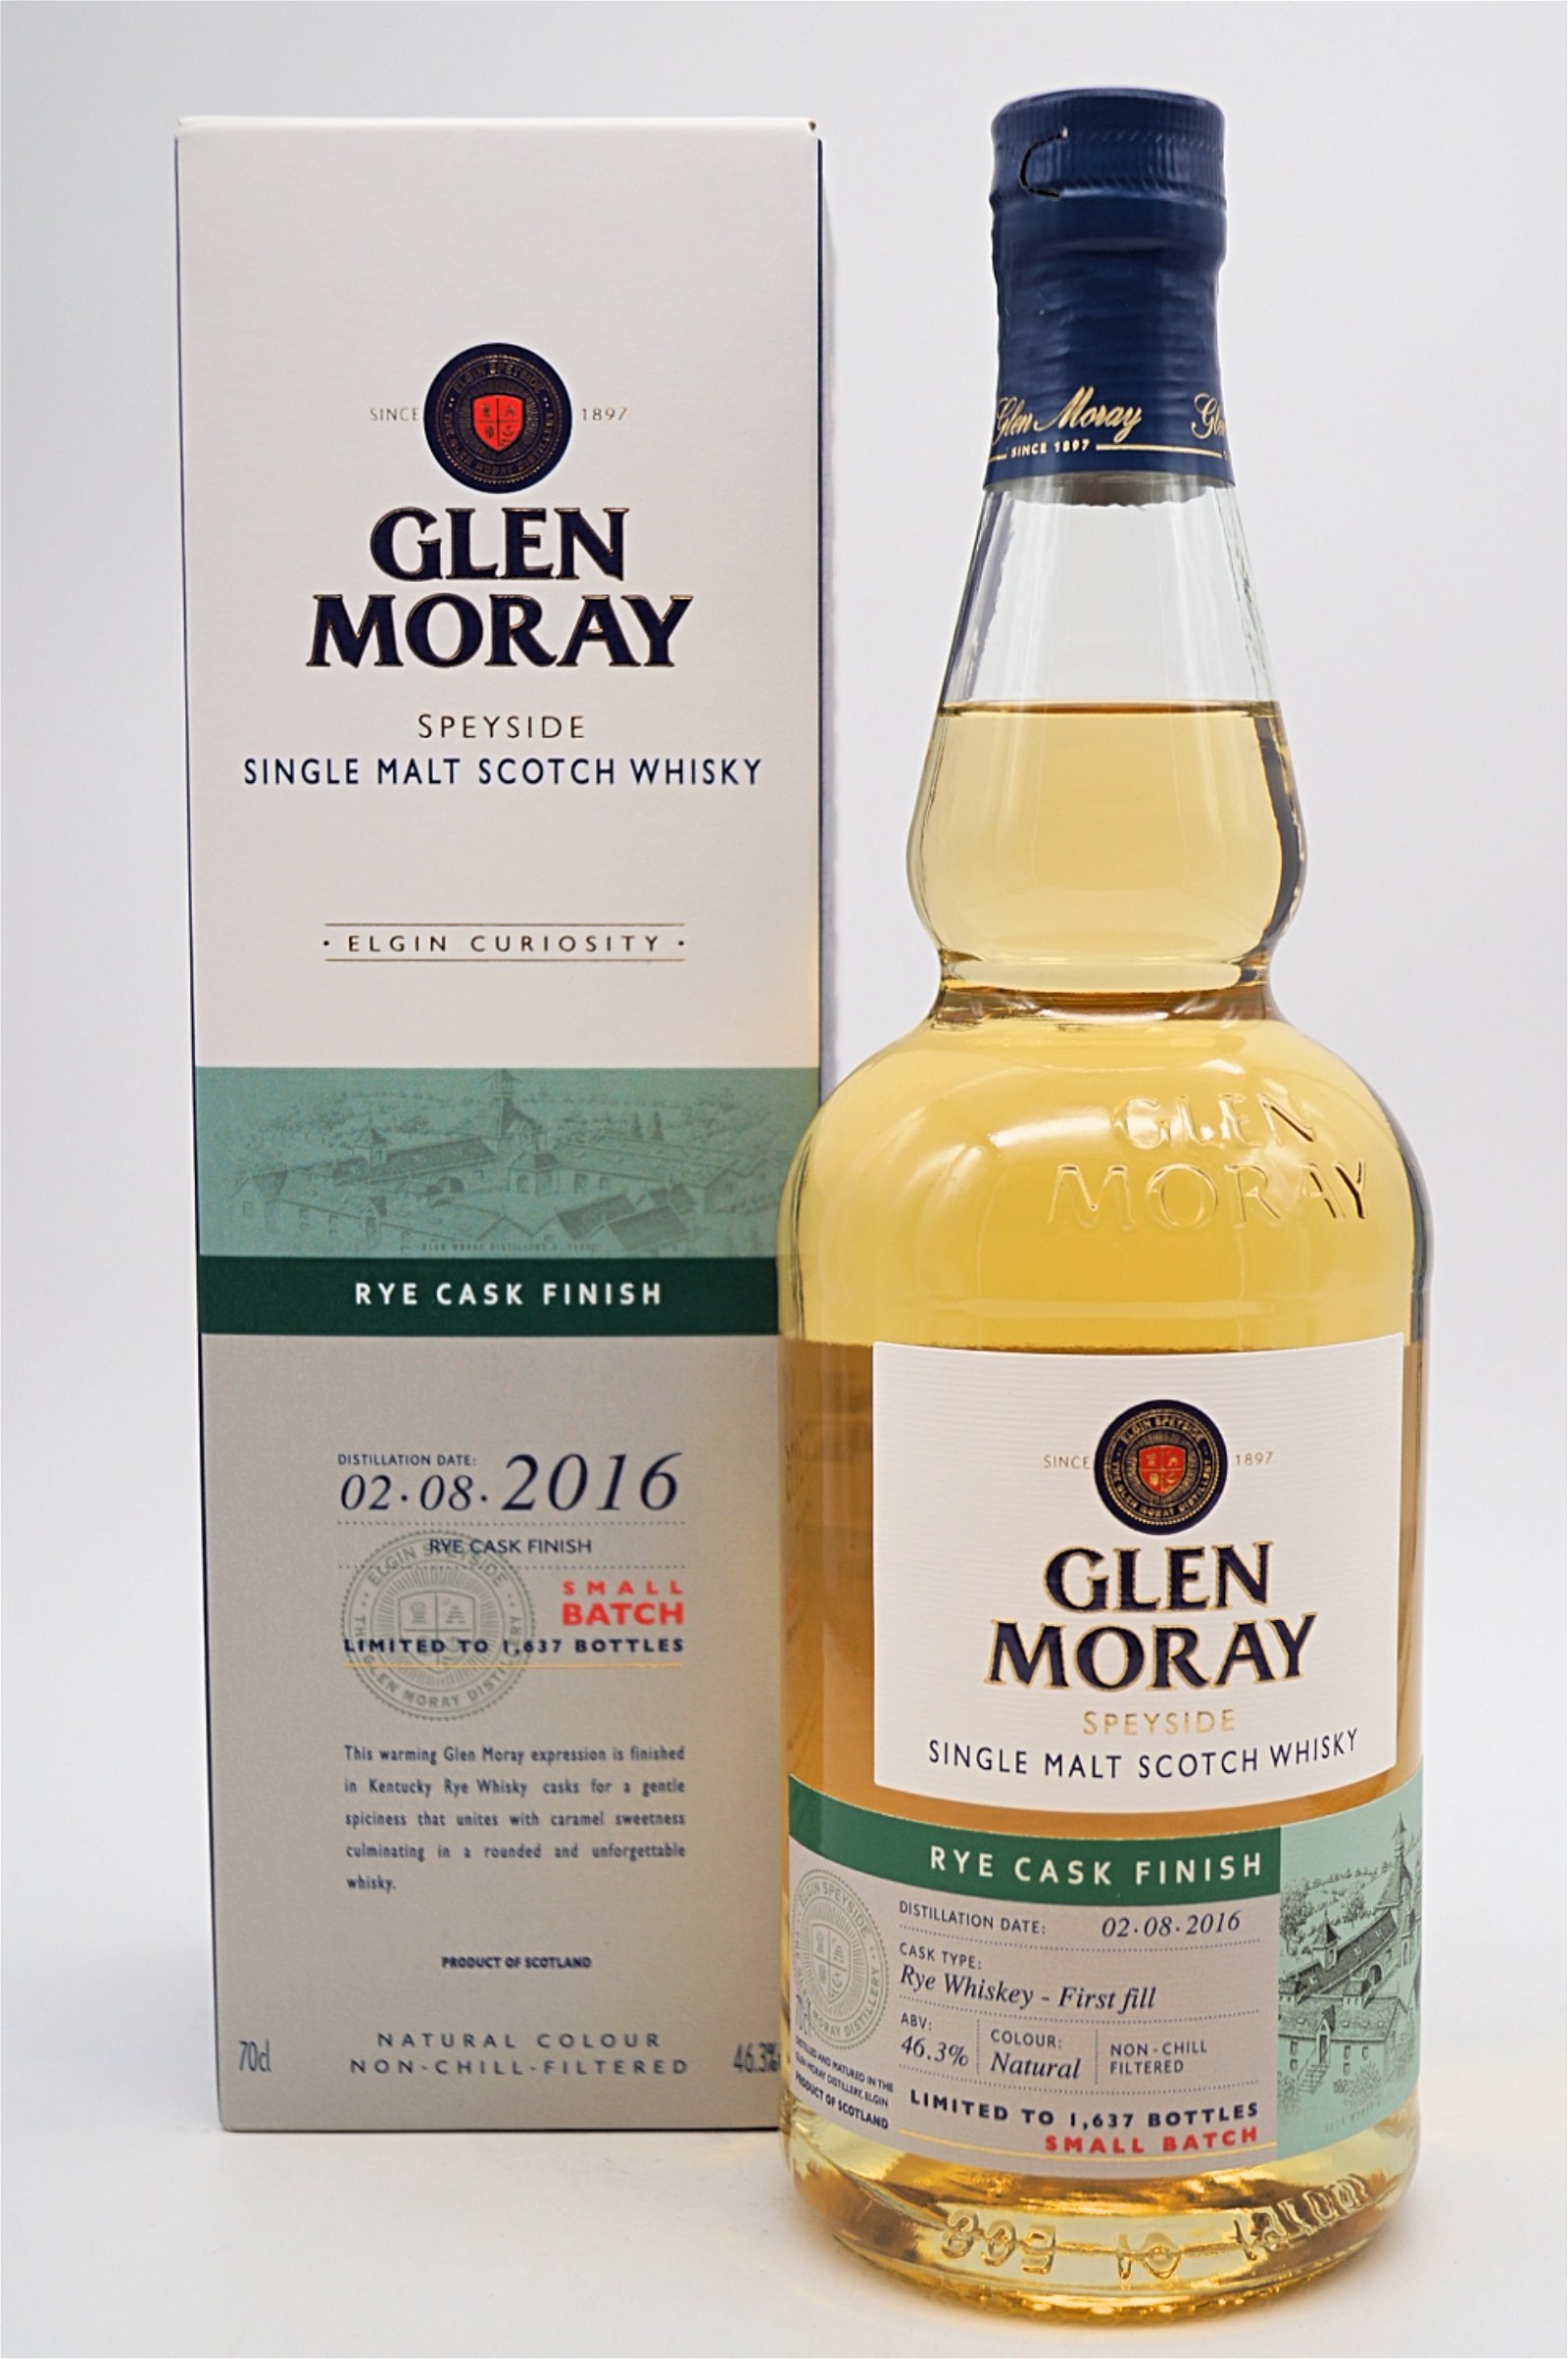 Glen Moray Rye Cask Finish Speyside Single Malt Scotch Whisky